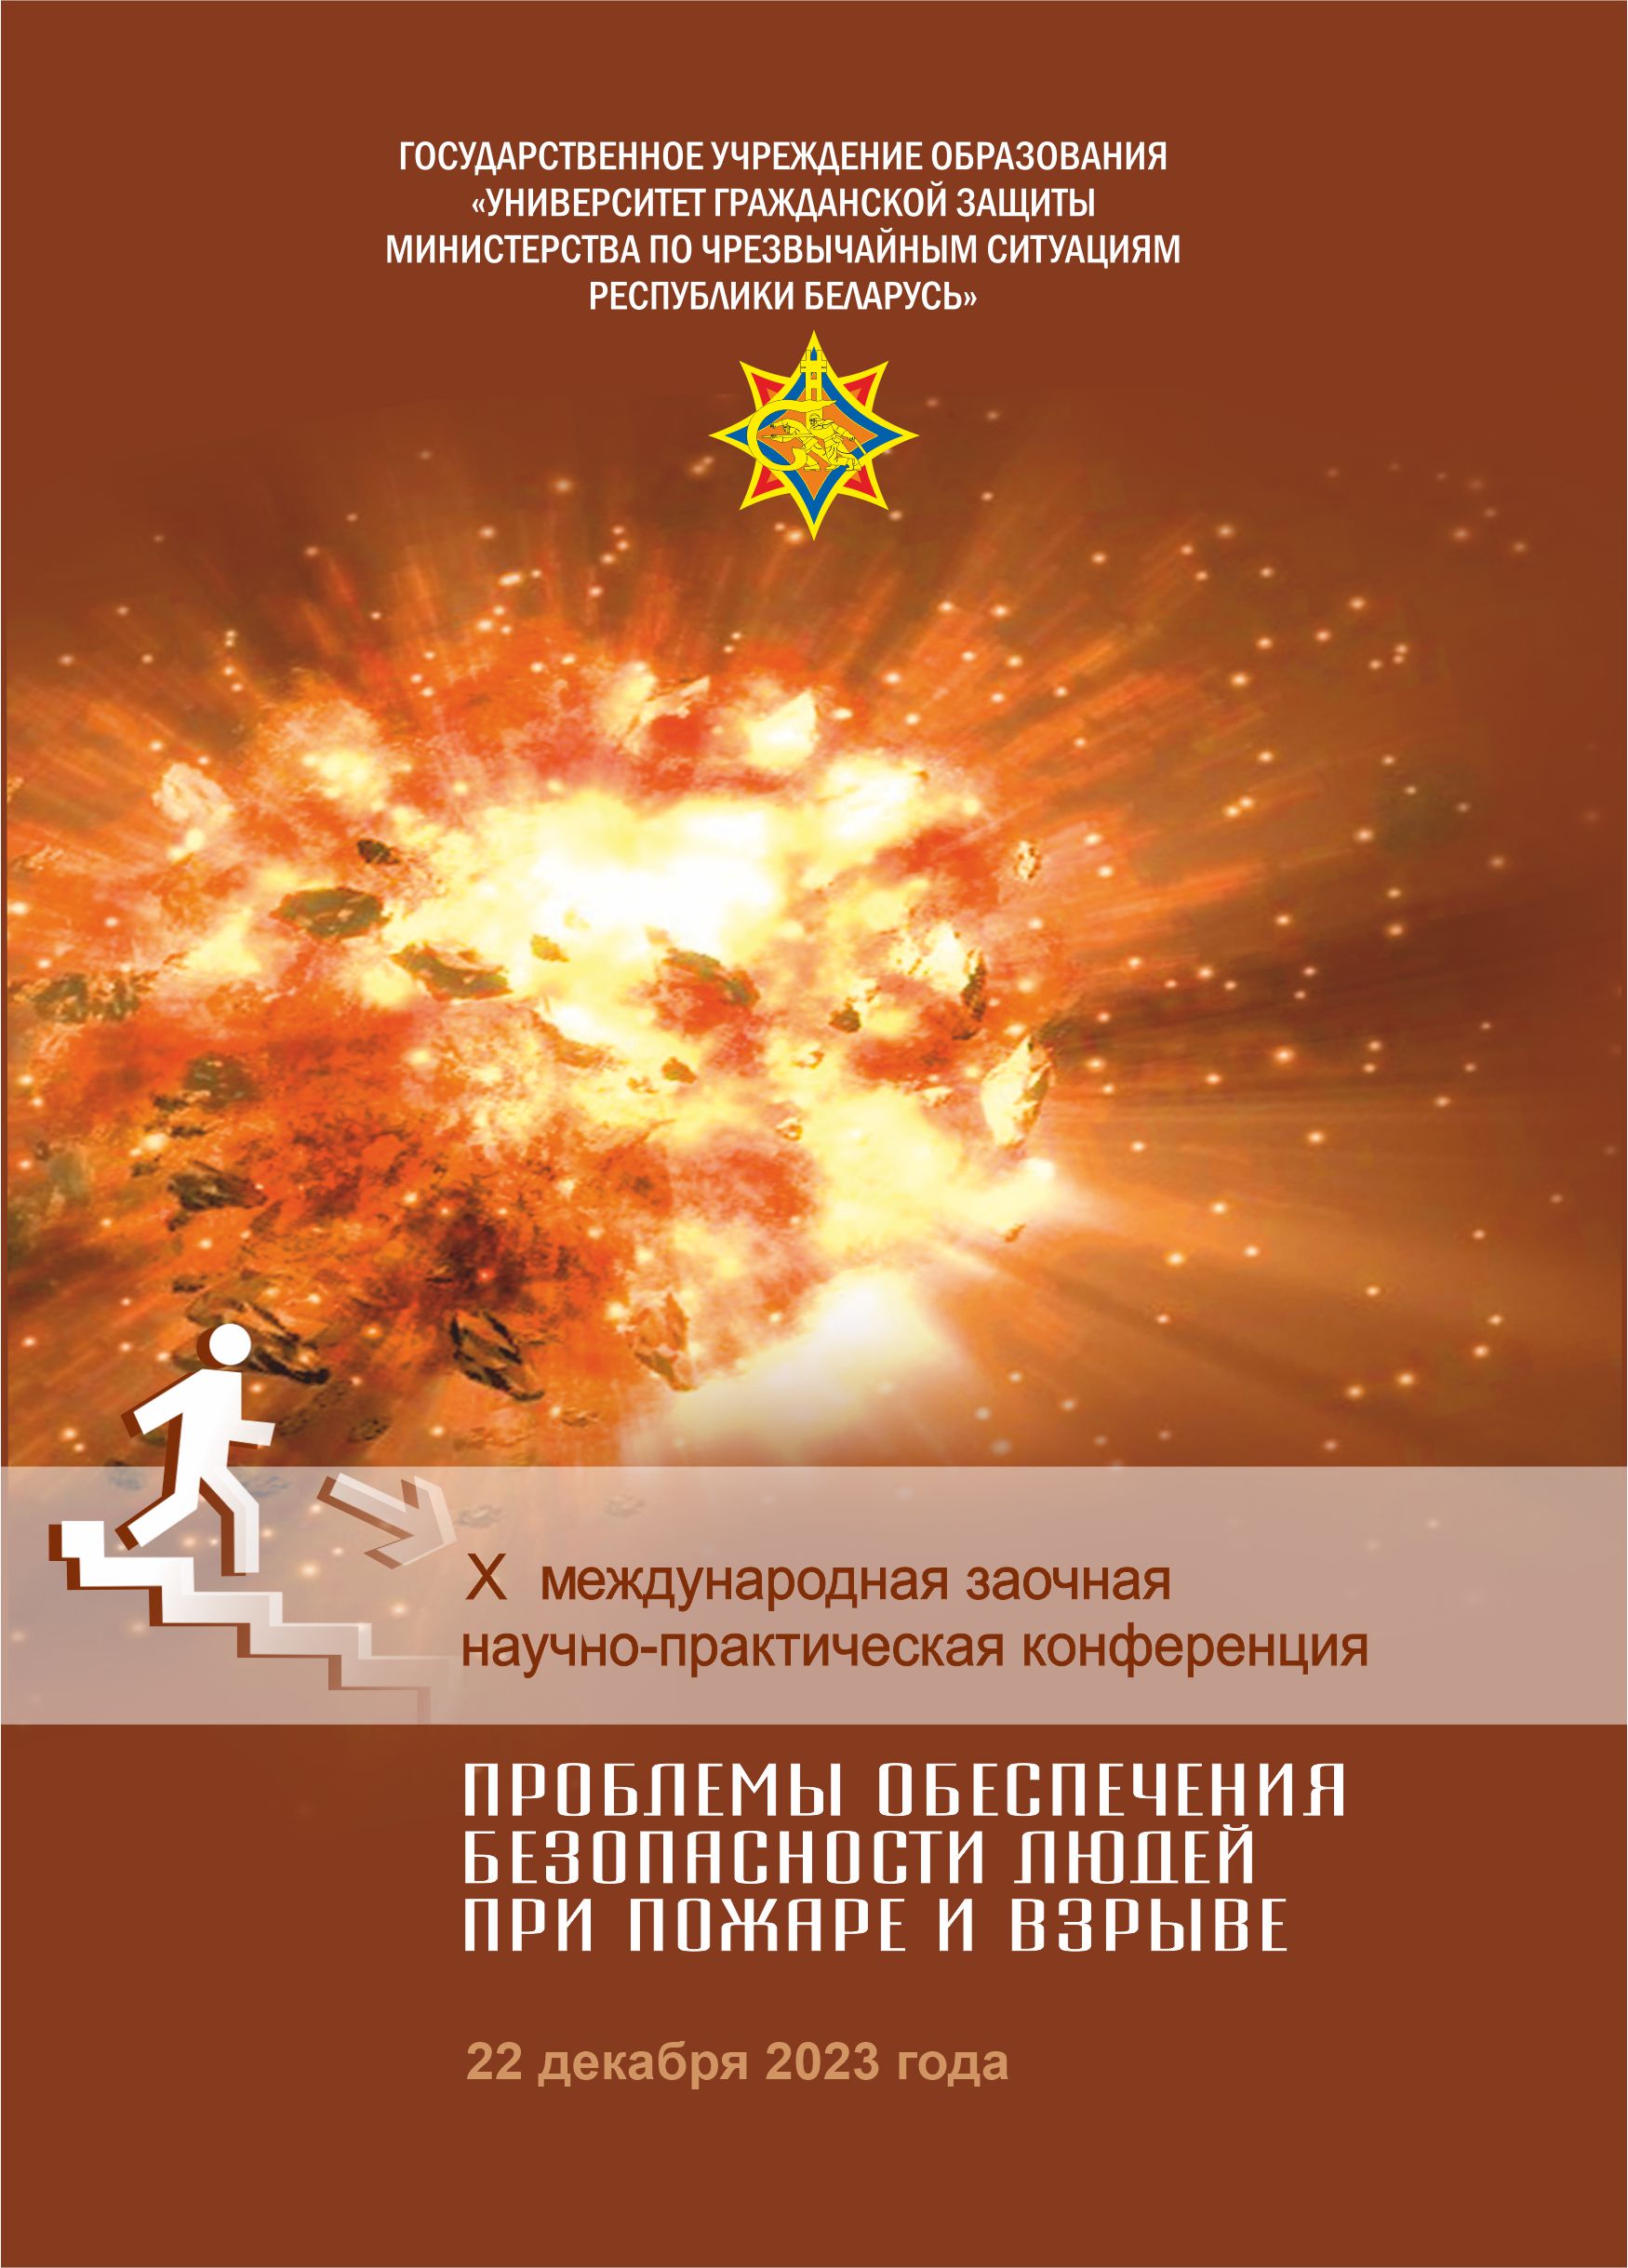 					View 2023: X Международная заочная научно-практическая конференция «Проблемы обеспечения безопасности людей при пожаре и взрыве»
				